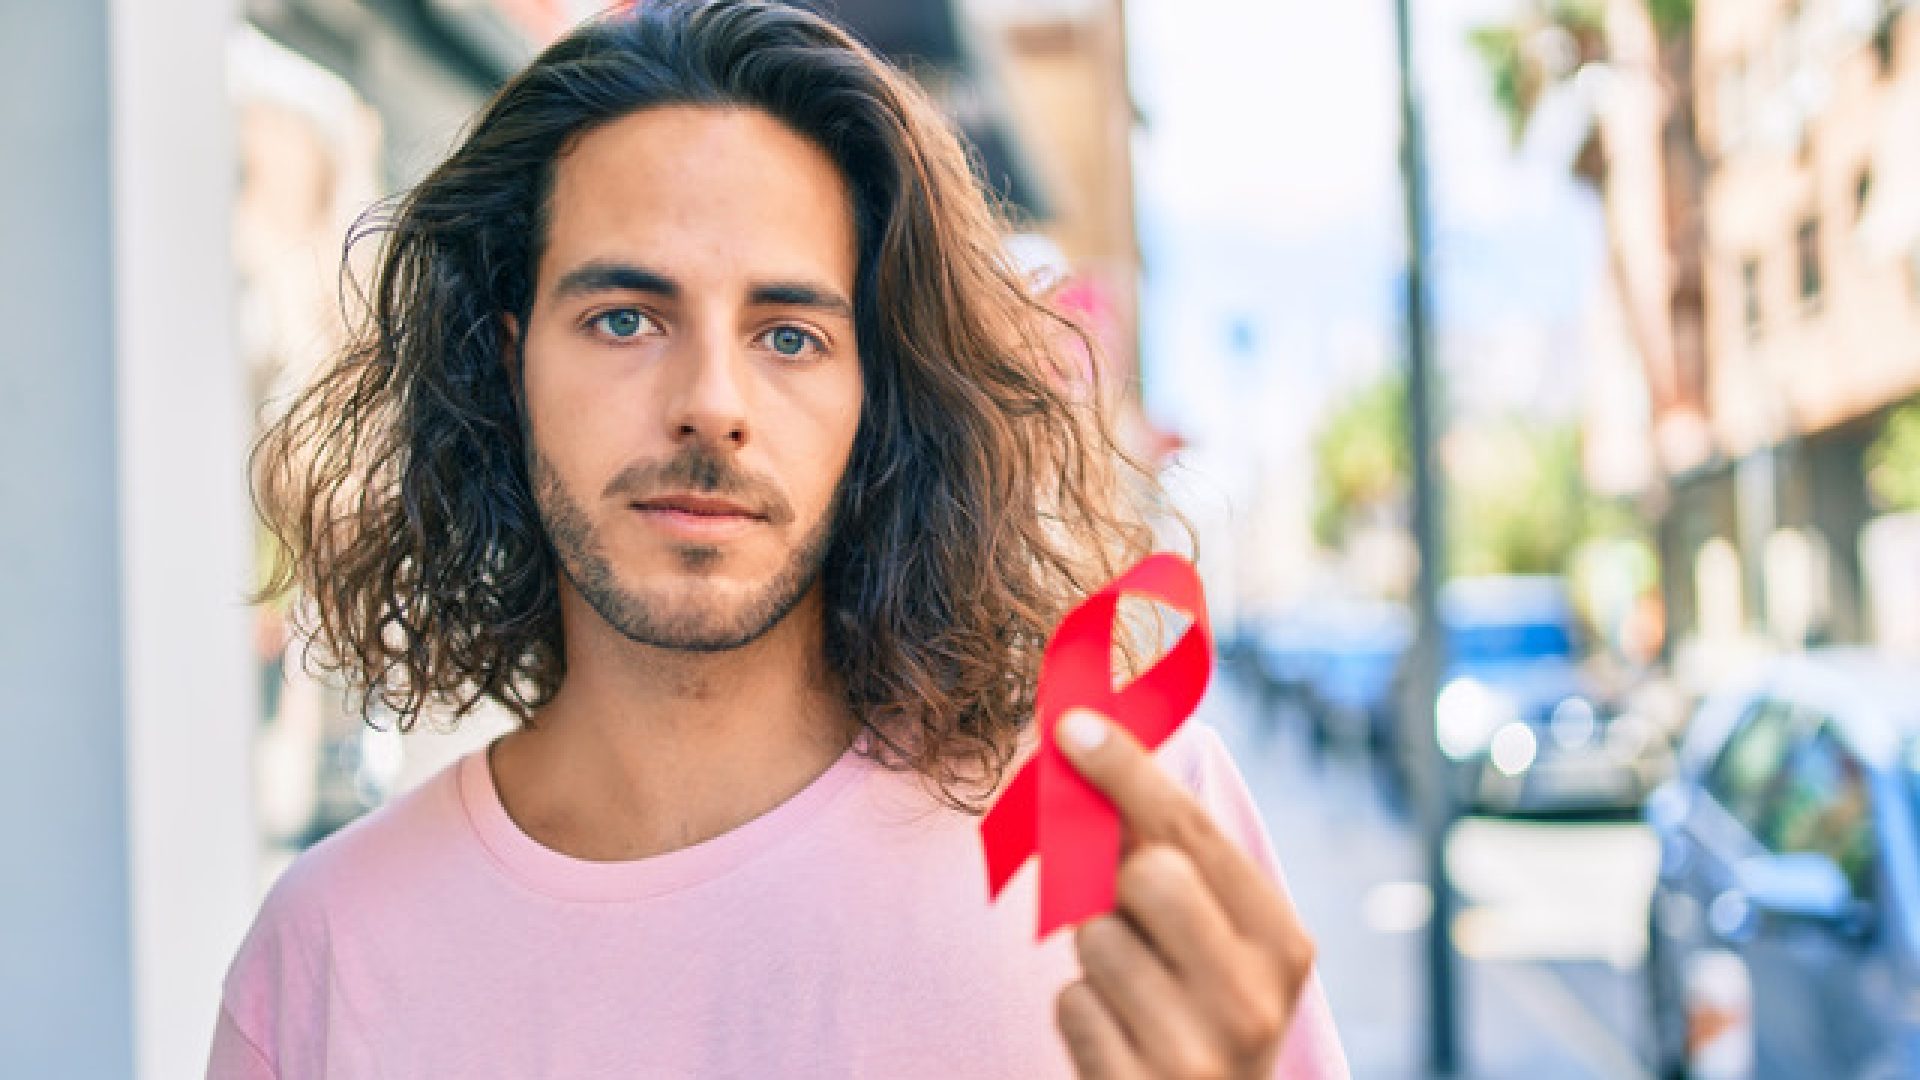 Neboj se testování. S dnešní léčbou HIV můžeš žít normální život, jen ji musíš zahájit včas.